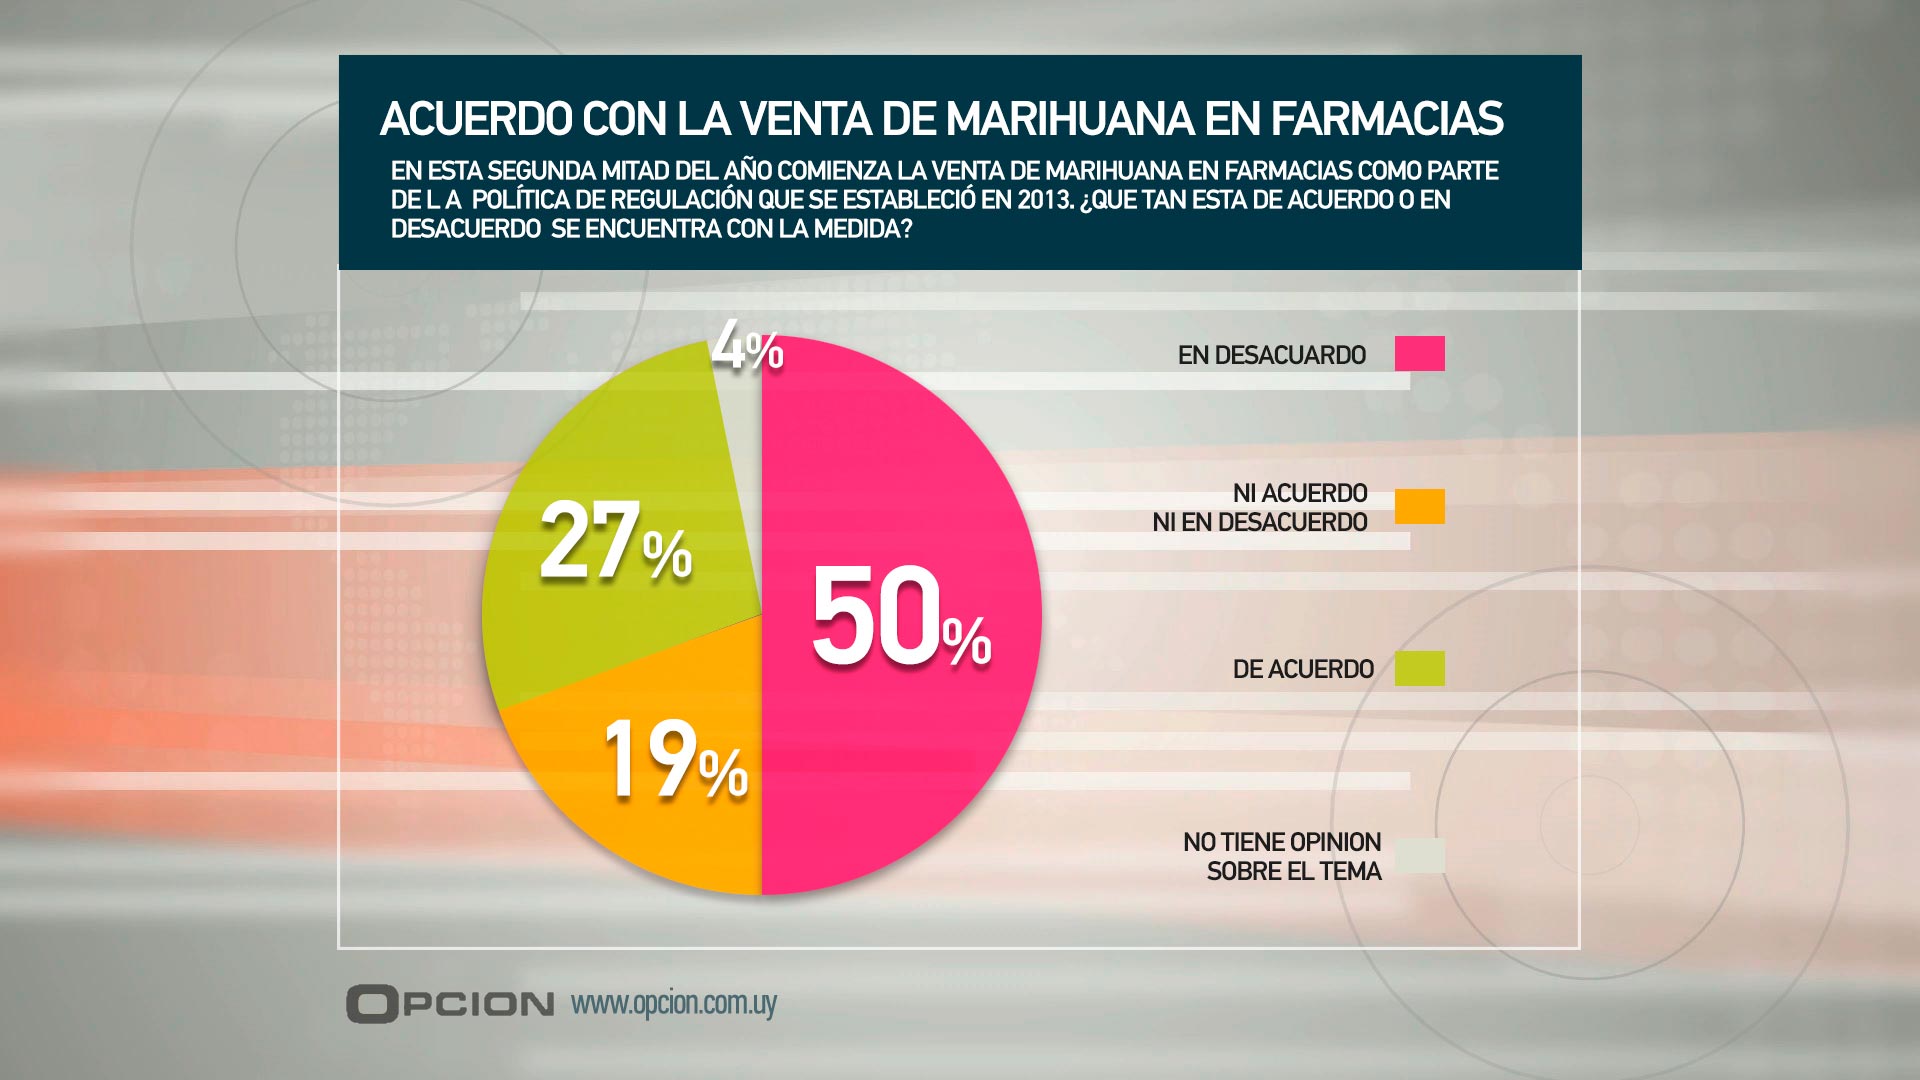 La mitad de los uruguayos desaprueba la legalización de la marihuana